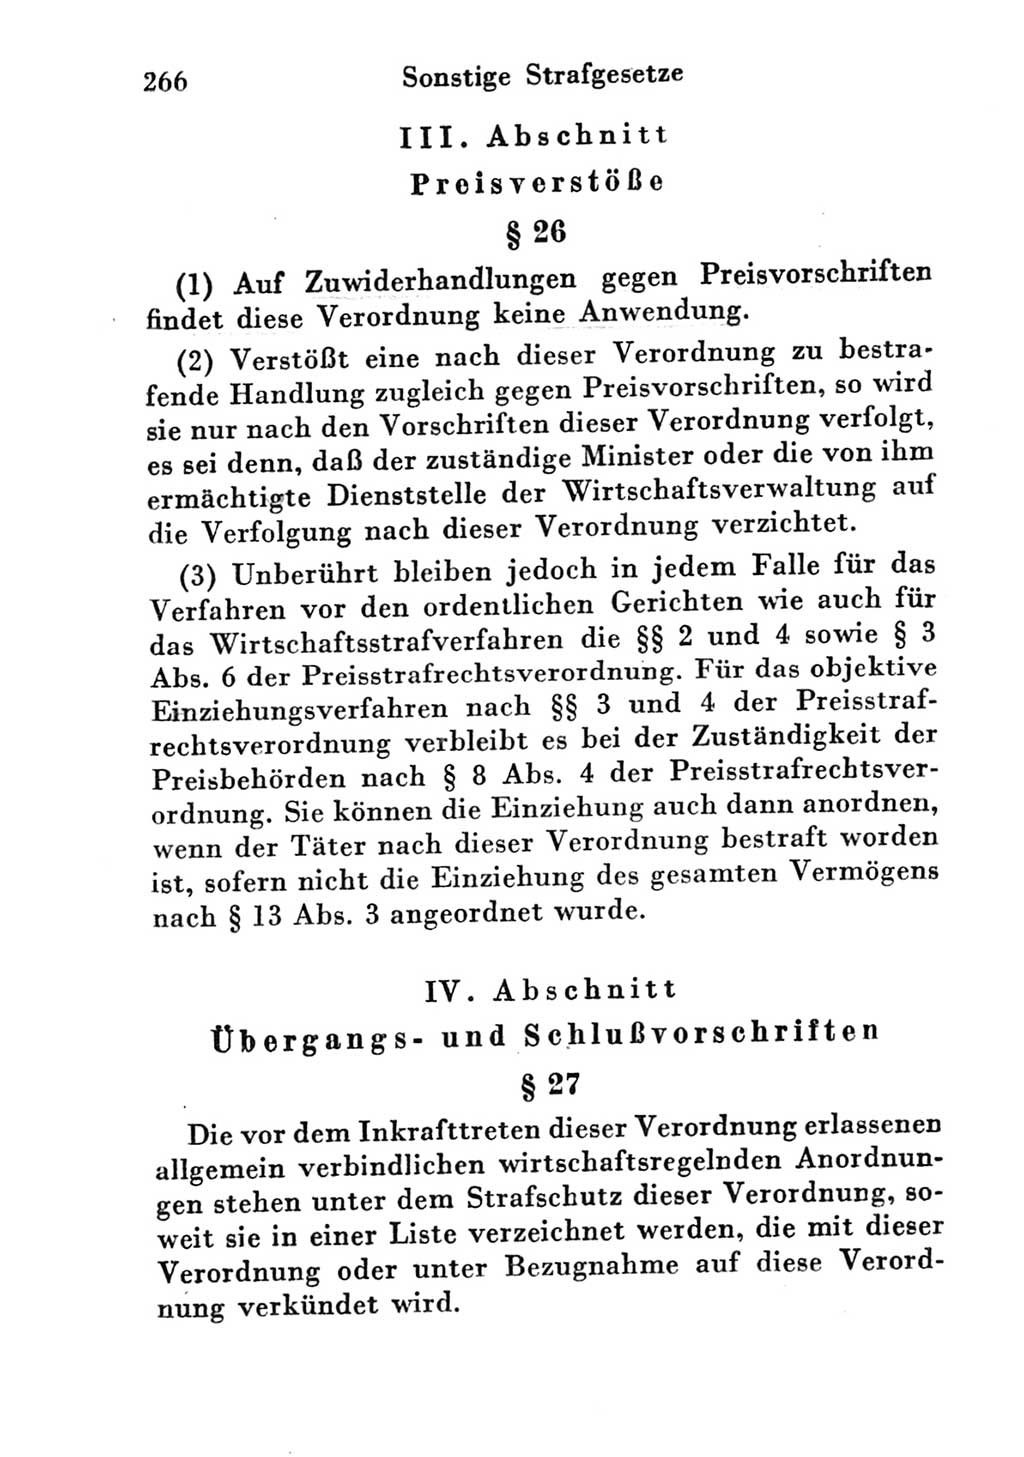 Strafgesetzbuch (StGB) und andere Strafgesetze [Deutsche Demokratische Republik (DDR)] 1951, Seite 266 (StGB Strafges. DDR 1951, S. 266)